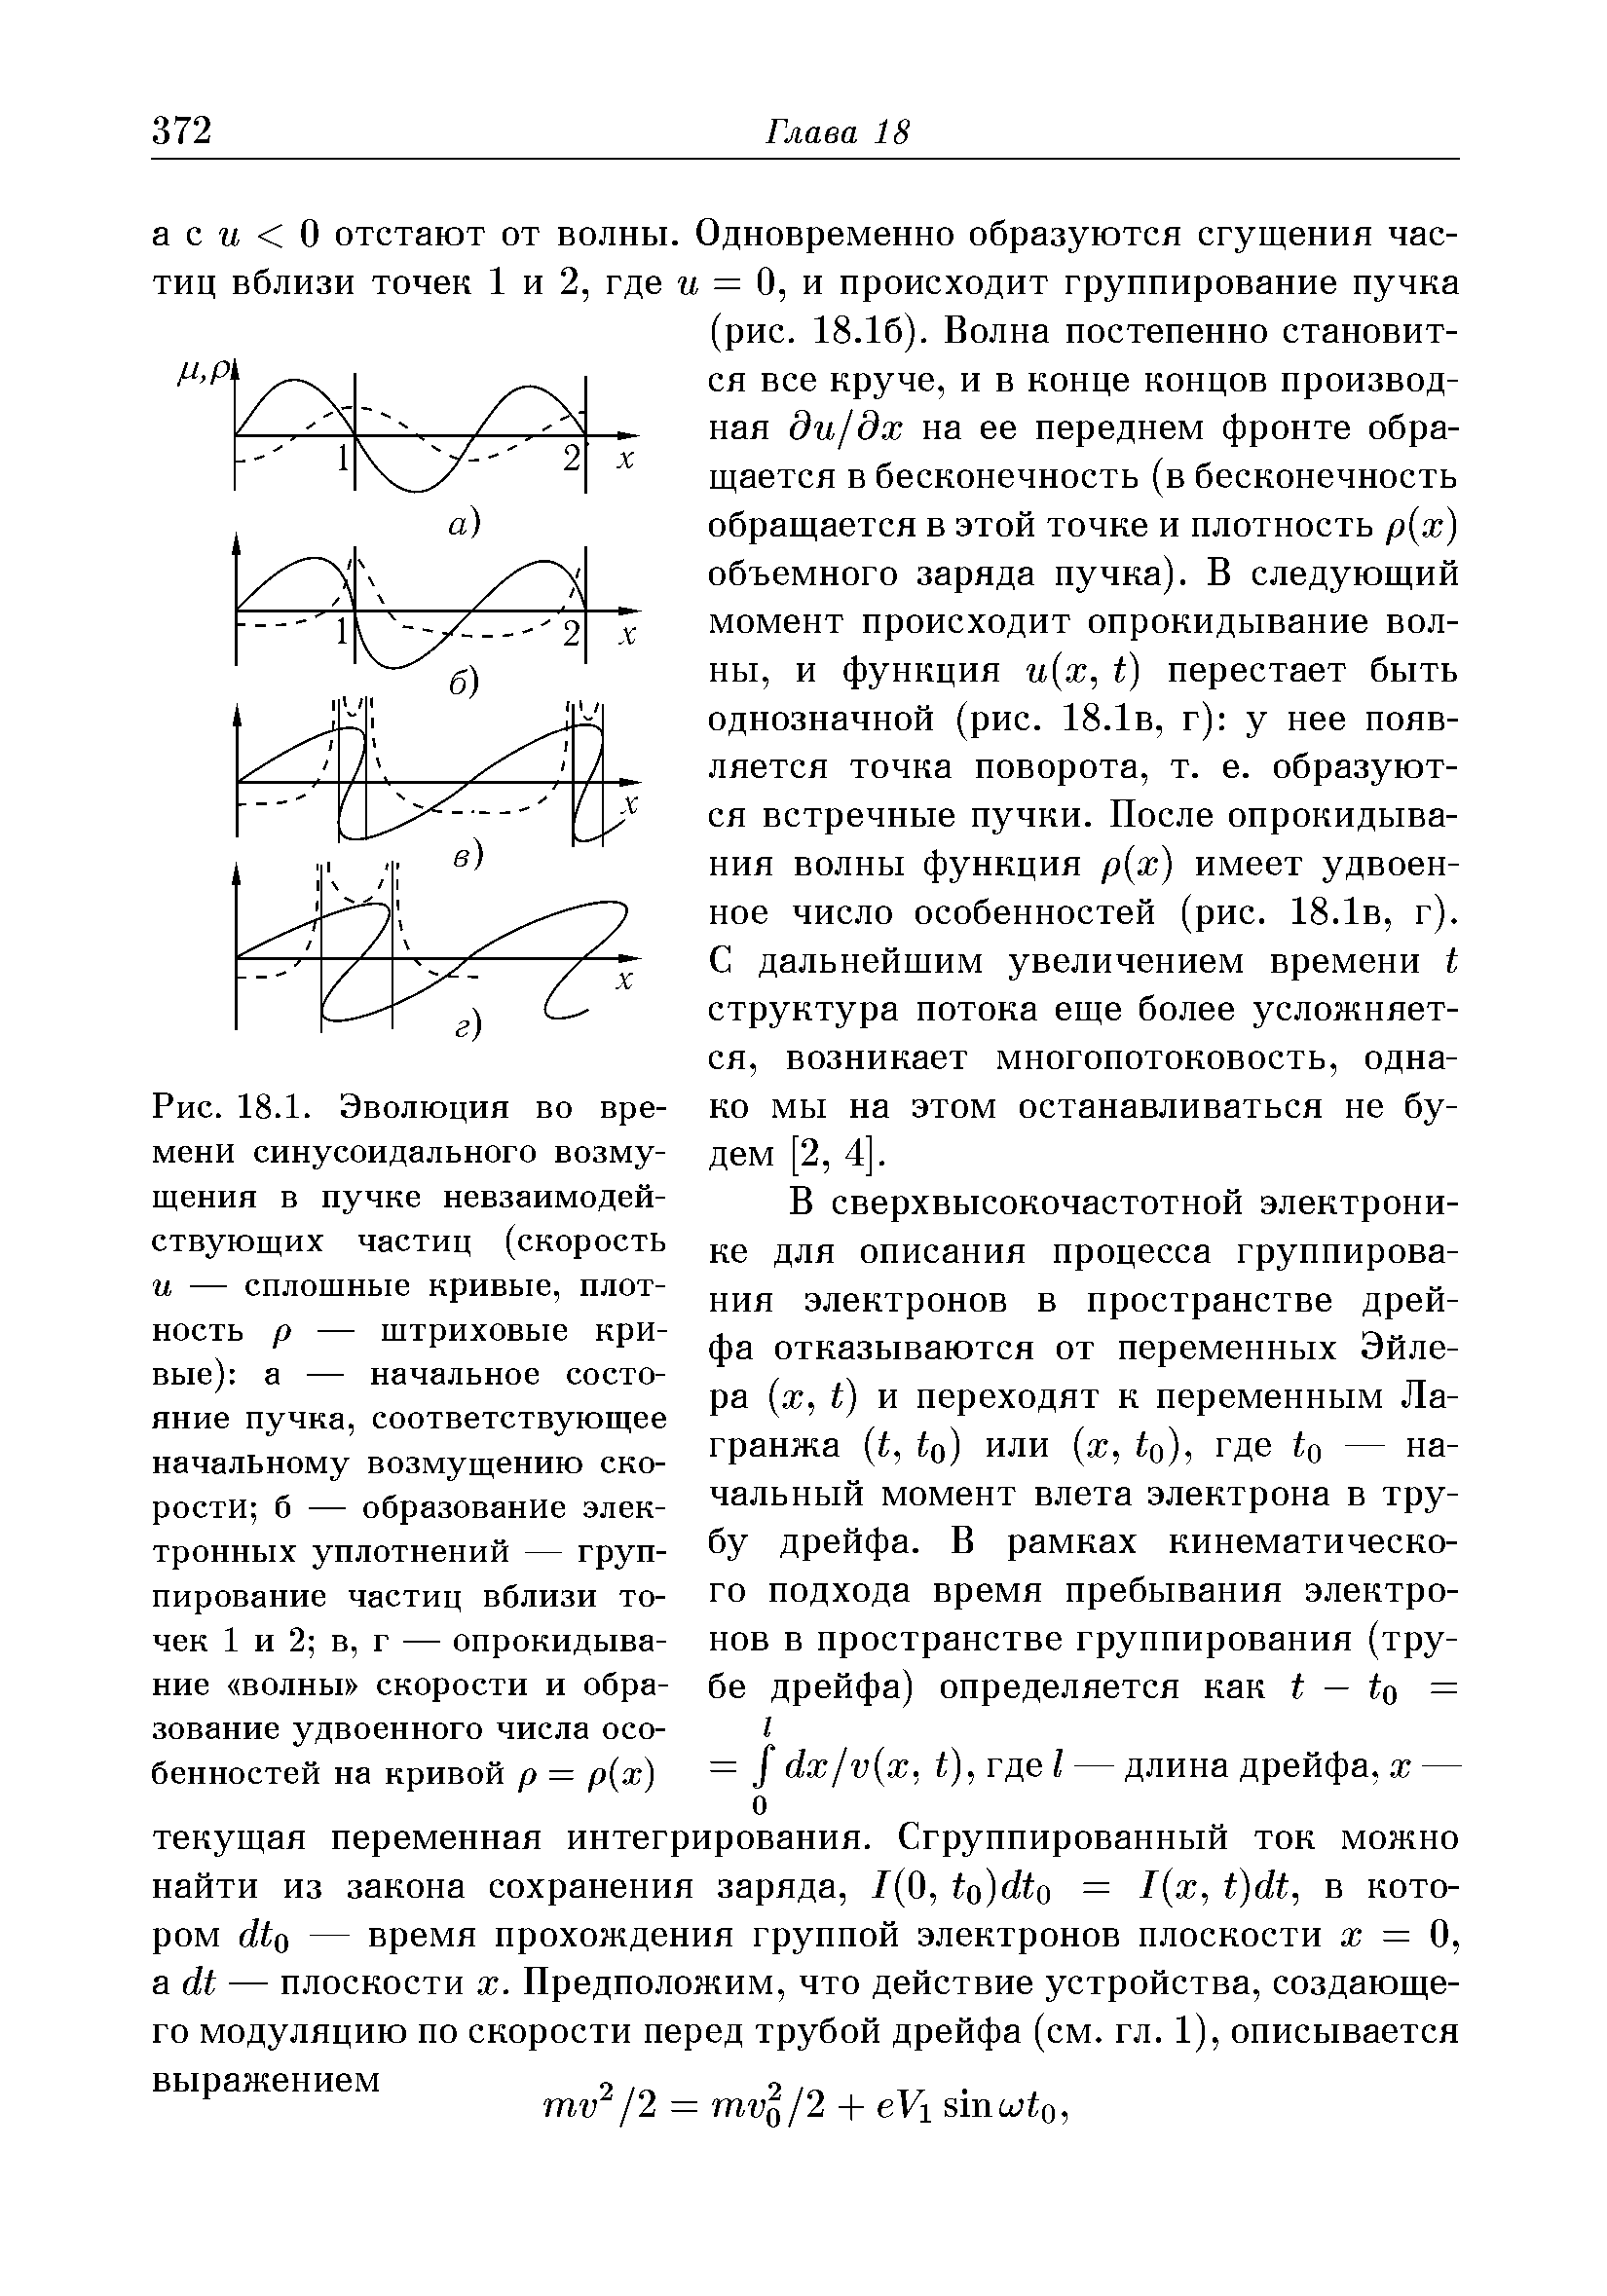 Рис. 18.1. Эволюция во времени синусоидального возмущения в пучке невзаимодействующих частиц (скорость и — сплошные кривые, плотность р — штриховые кривые) а — <a href="/info/31537">начальное состояние</a> пучка, соответствующее <a href="/info/413946">начальному возмущению</a> скорости б — образование электронных уплотнений — группирование частиц вблизи точек 1 и 2 в, г — <a href="/info/362383">опрокидывание волны</a> скорости и образование удвоенного числа особенностей на кривой р = р(х)
